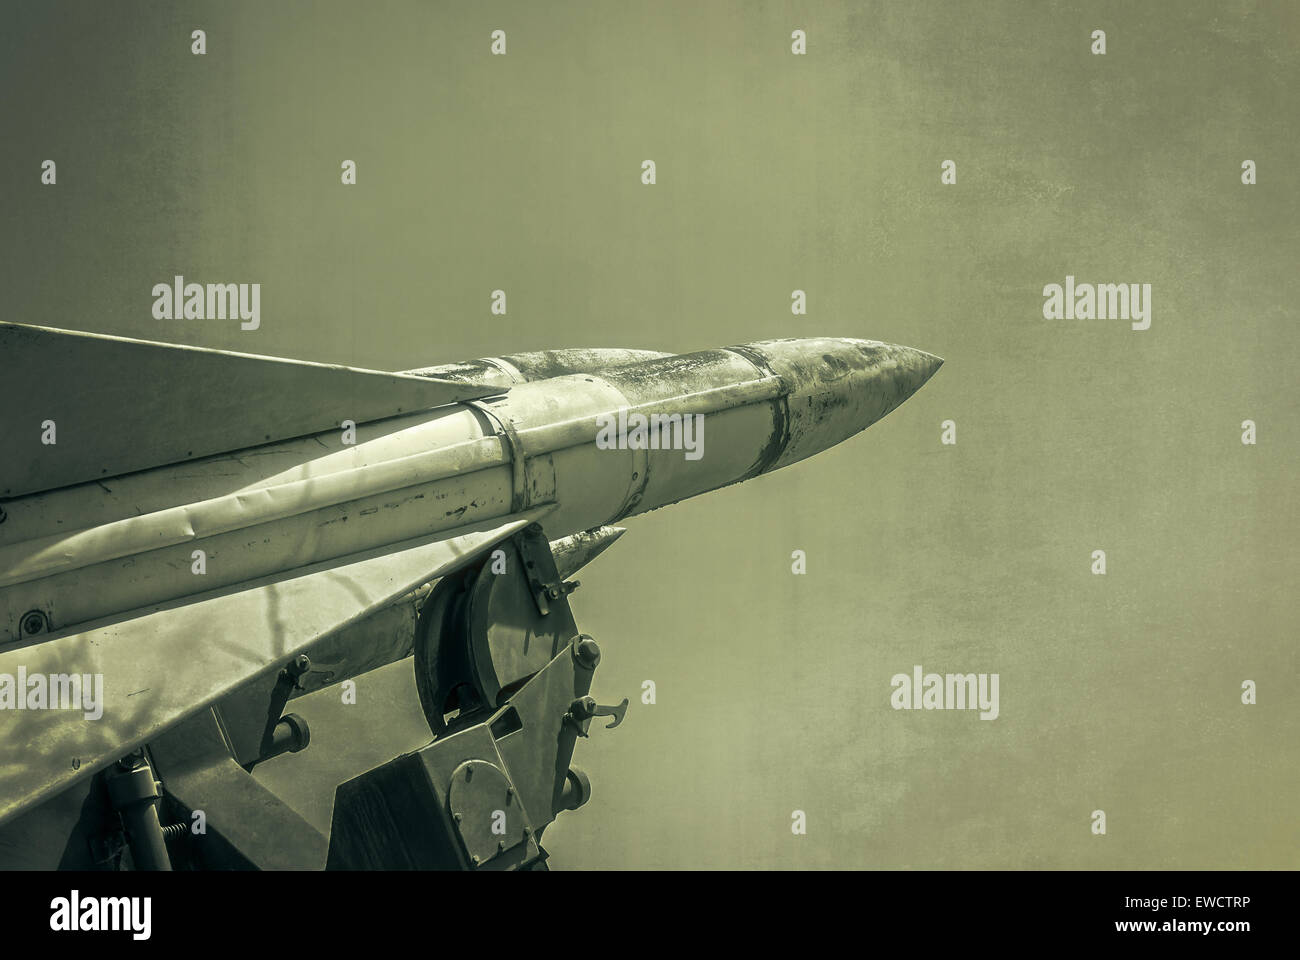 Alte russische Flak Verteidigung Rocket Launcher Raketen. Grunge-Armee-Rakete.  Foto im Stil der alten Farbe Bild texturiert. Stockfoto